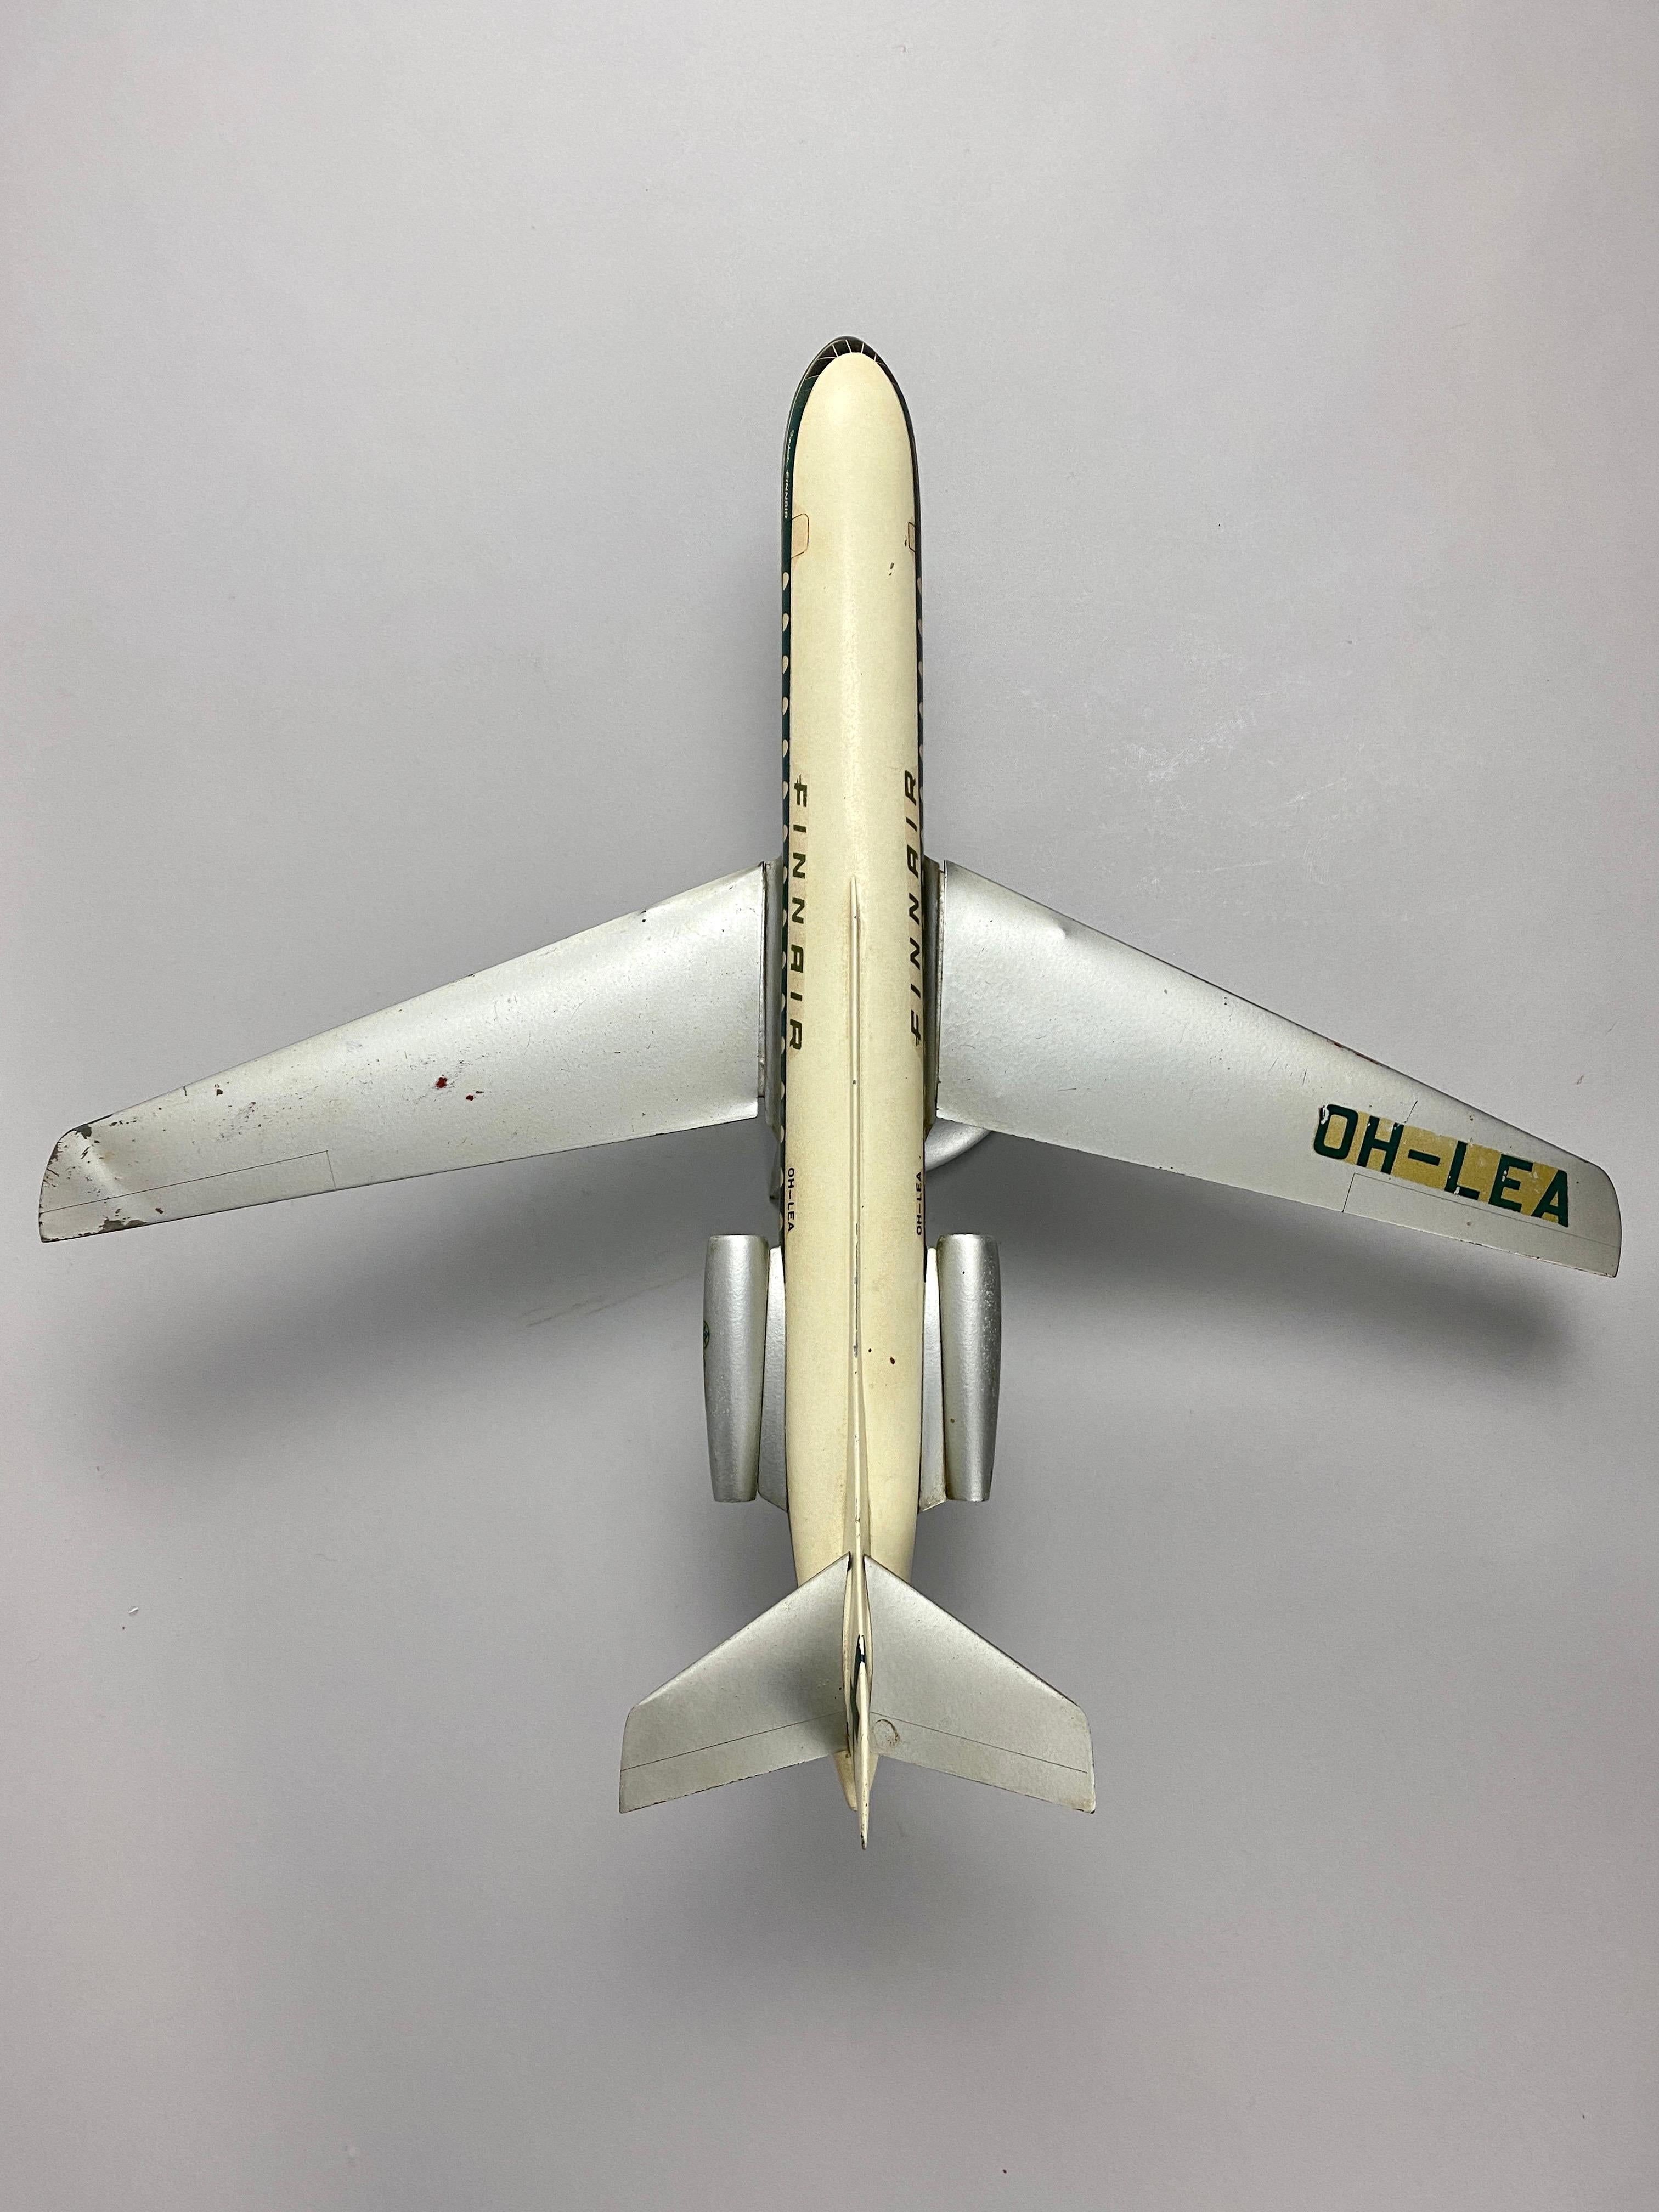 Entrez dans l'histoire de l'aviation avec l'emblématique maquette d'avion Finnair Aero Caravelle des années 1960, méticuleusement fabriquée par Schaarschmidt Modelbau à Berlin. Ce modèle exquis rend hommage à une ère d'innovation et d'élégance dans